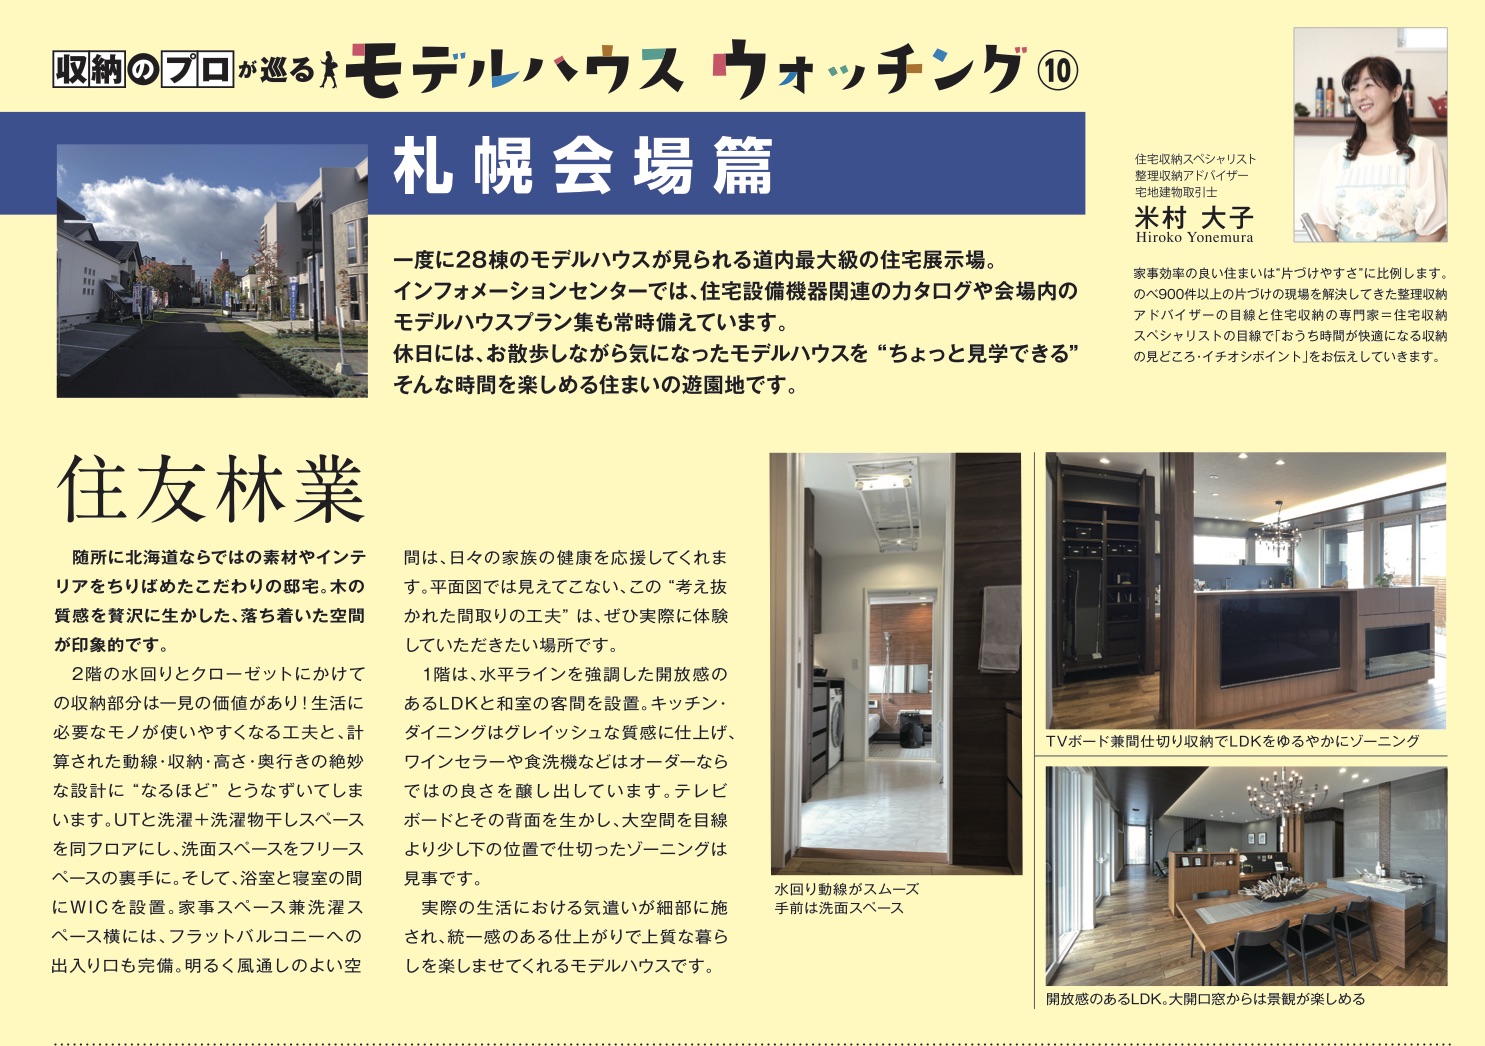 ハウスメーカー各社のモデルハウスが立ち並ぶ総合住宅展示場北海道マイホームセンターの札幌会場の住友林業とユニバーサルホームのご紹介です